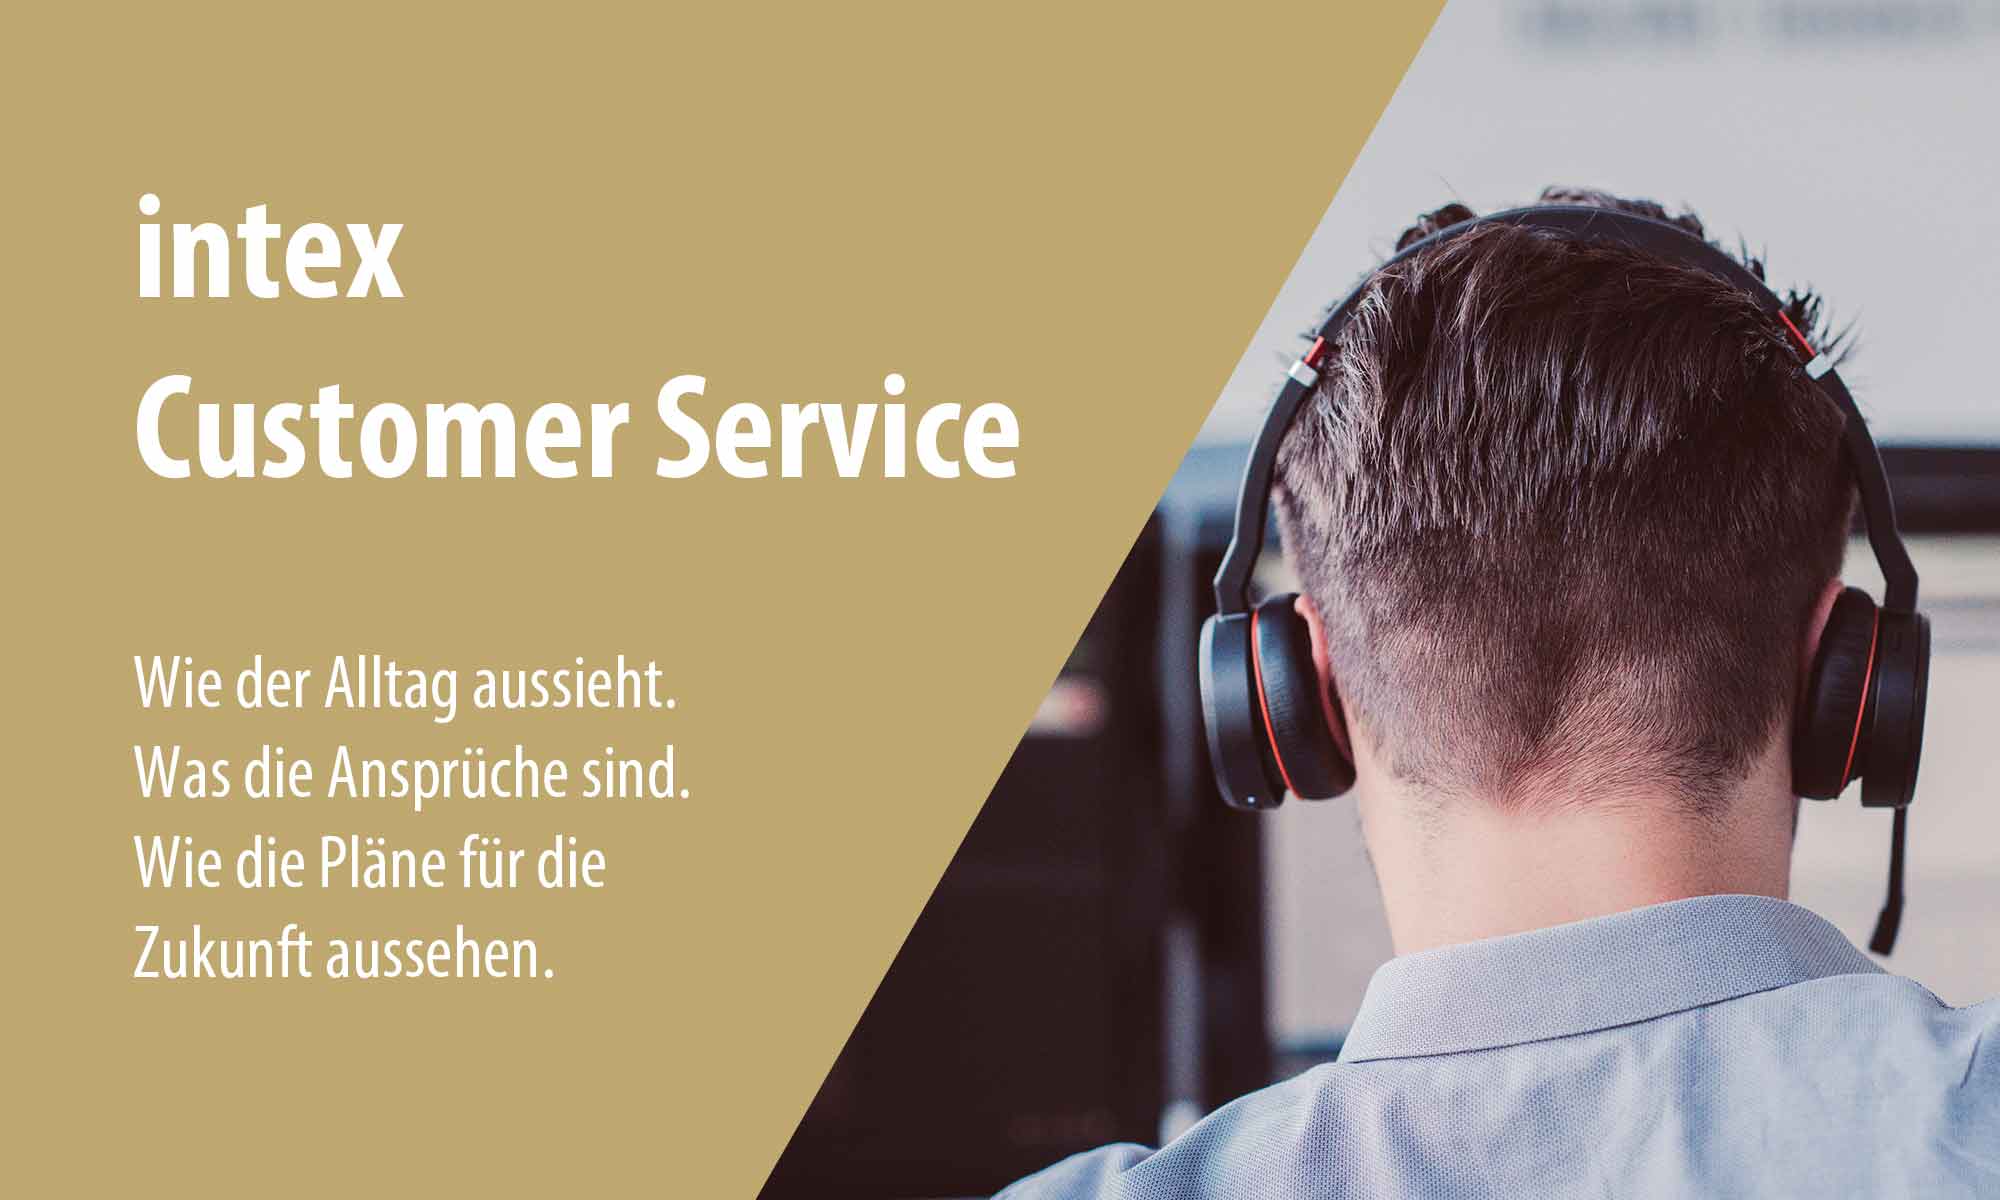 intex Customer Service Vorstellung